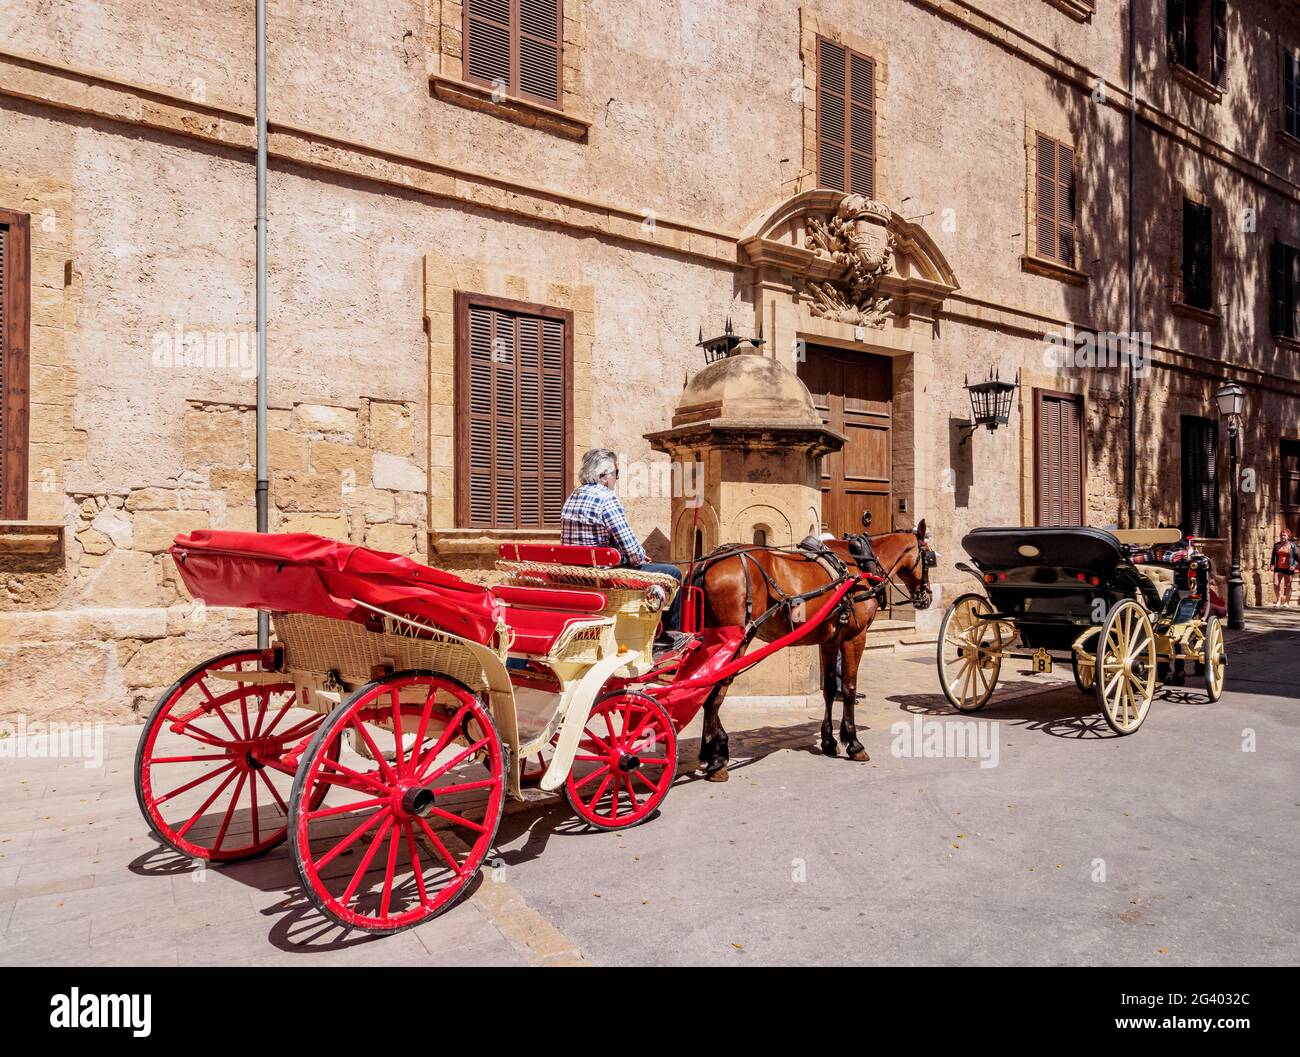 Carruajes de caballos en Carrer del Palau Reial, Palma de Mallorca, Mallorca, Islas Baleares, España Foto de stock